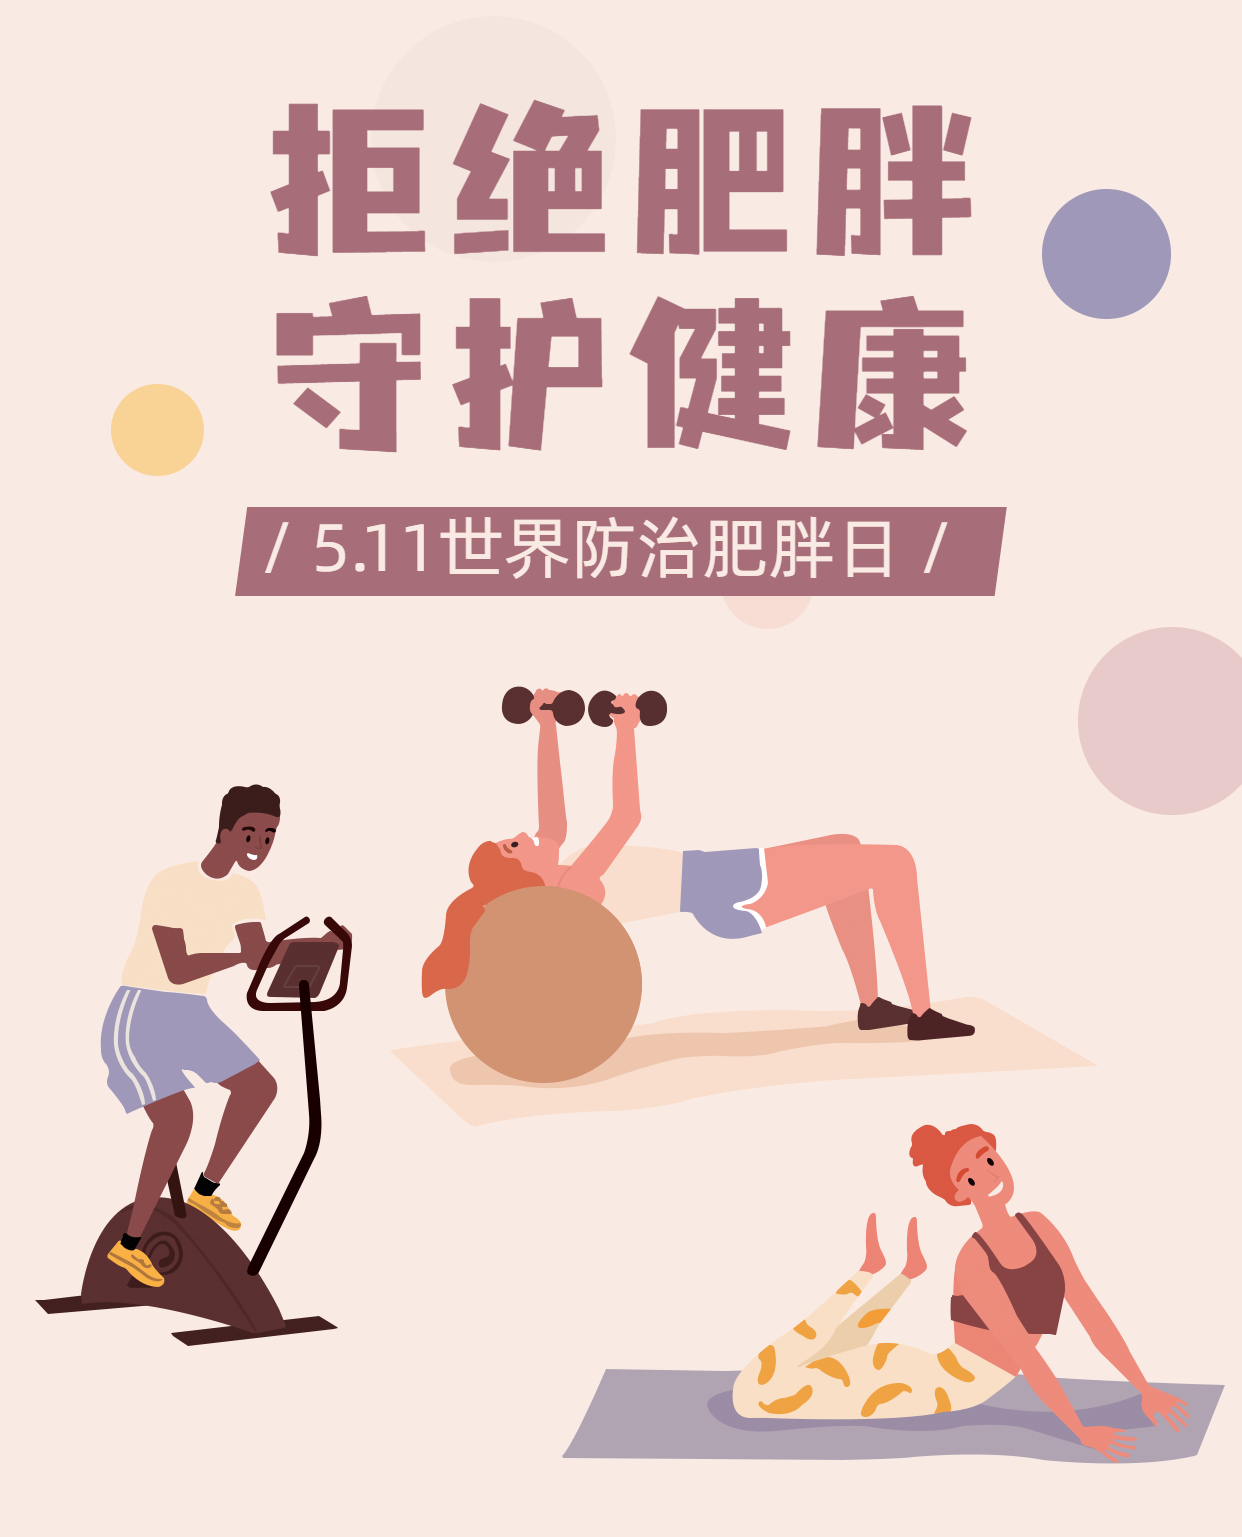 世界防治肥胖日节日宣传手机海报.jpg